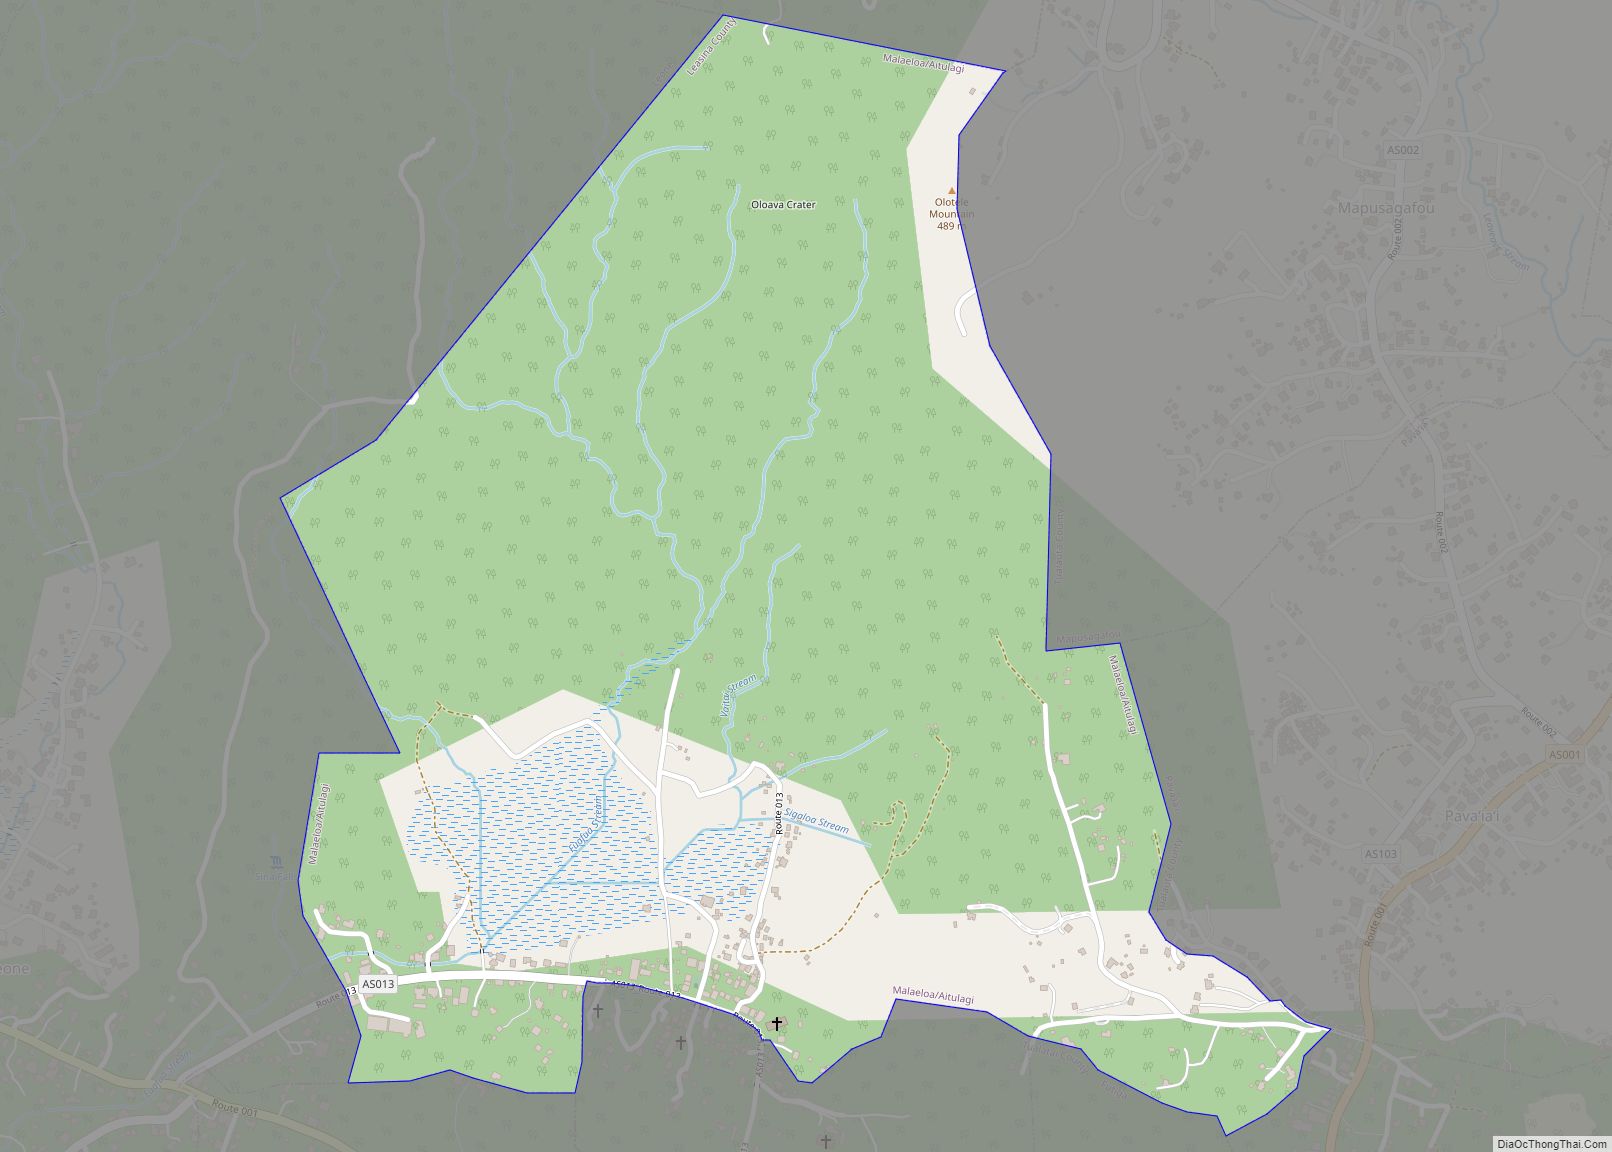 Map of Malaeloa/Aitulagi village